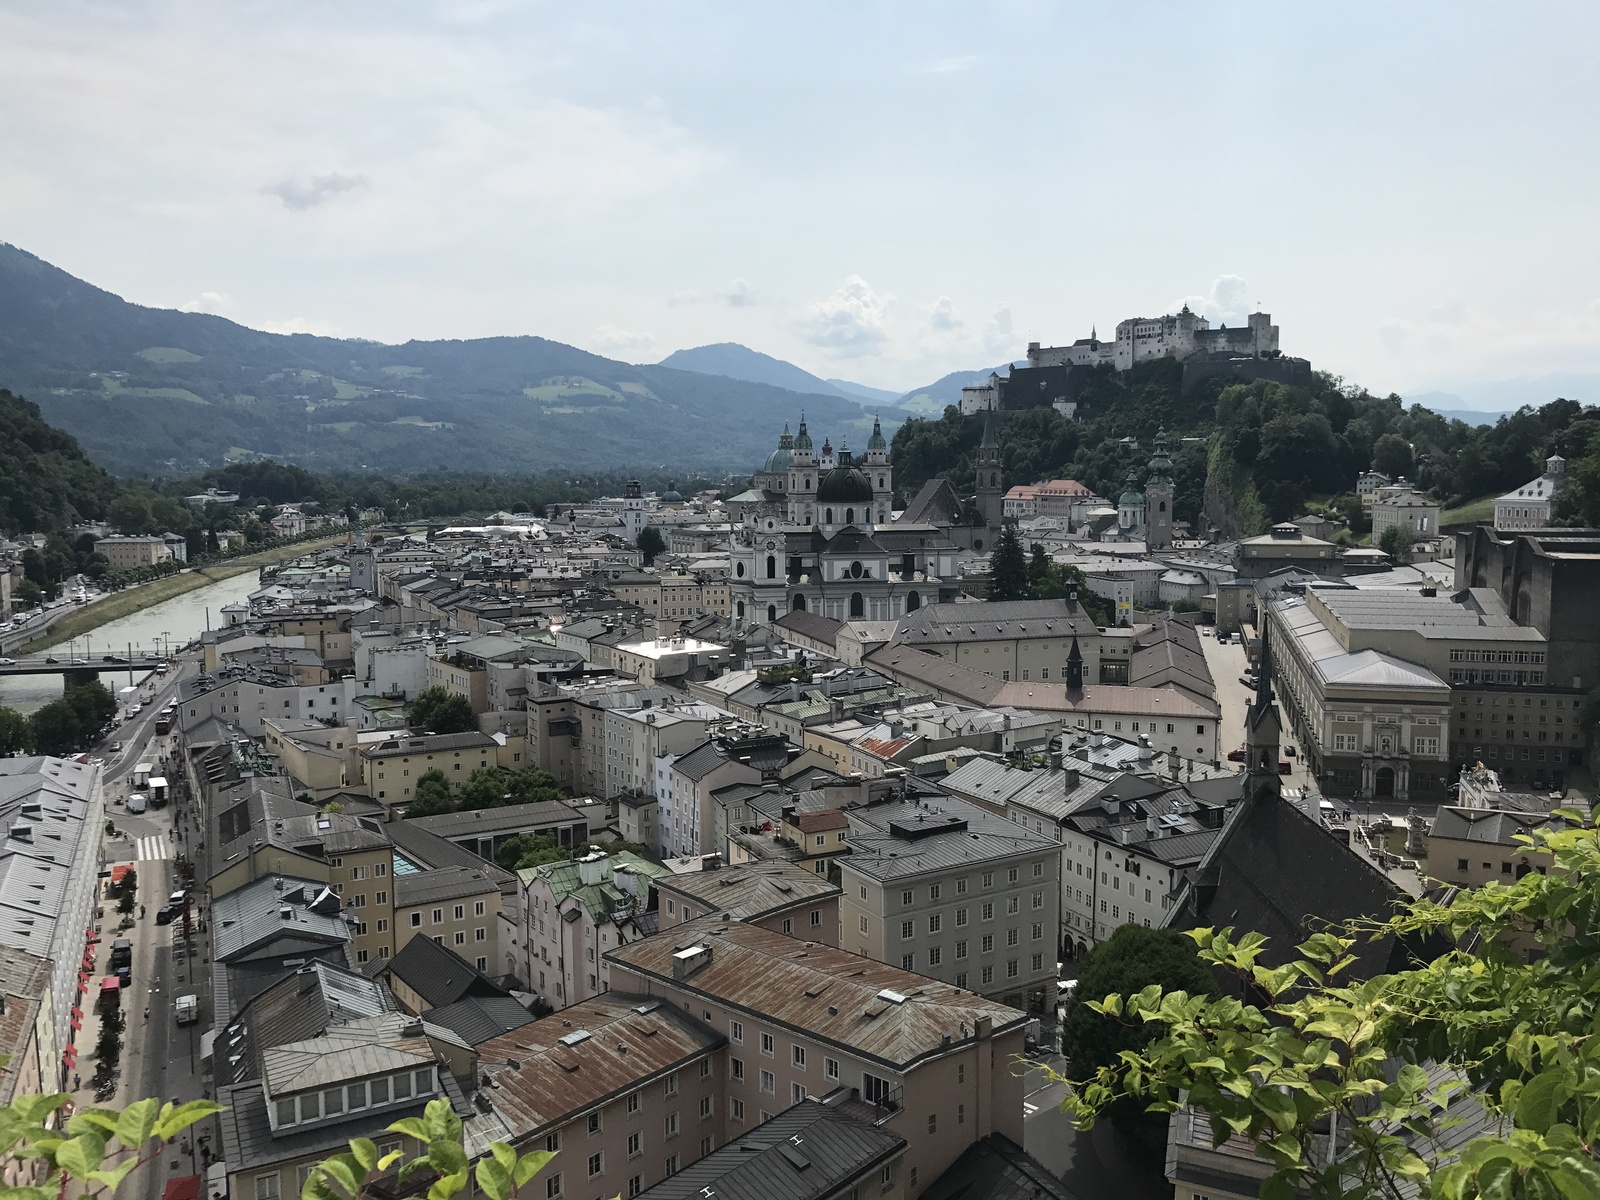 Salzburg card / Salzburg card - My, Austria, Salzburg, Travels, Saving, , Longpost